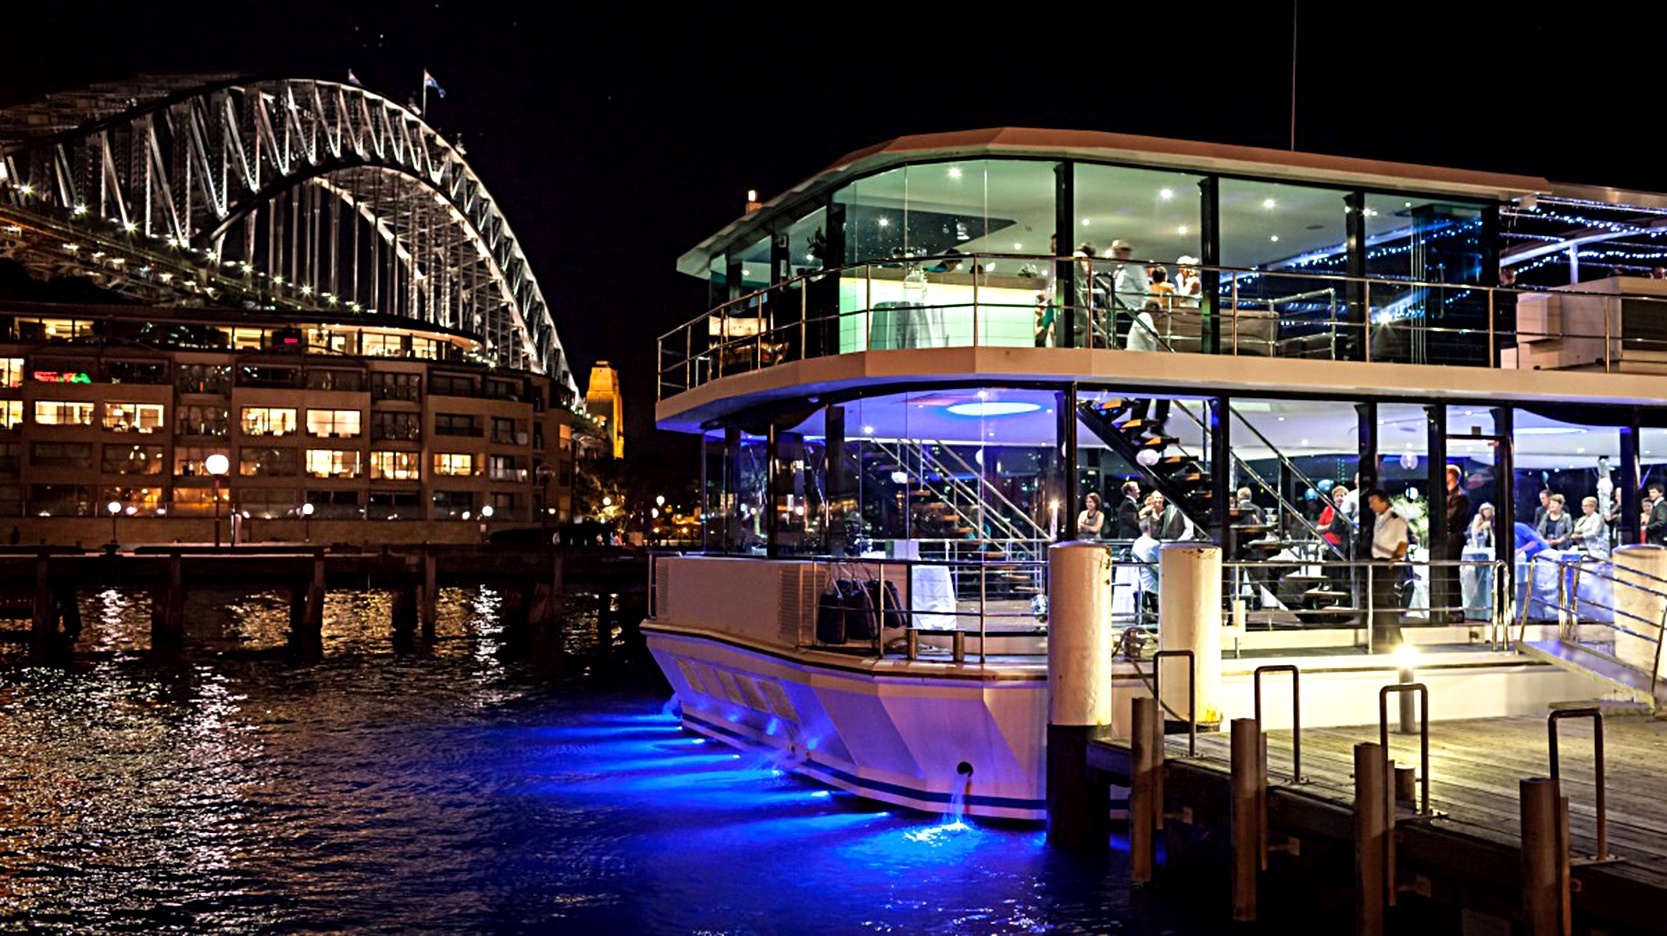 Î‘Ï€Î¿Ï„Î­Î»ÎµÏƒÎ¼Î± ÎµÎ¹ÎºÏŒÎ½Î±Ï‚ Î³Î¹Î± Clearview Cruises offers romantic dinner date on a luxury glass boat in Sydney